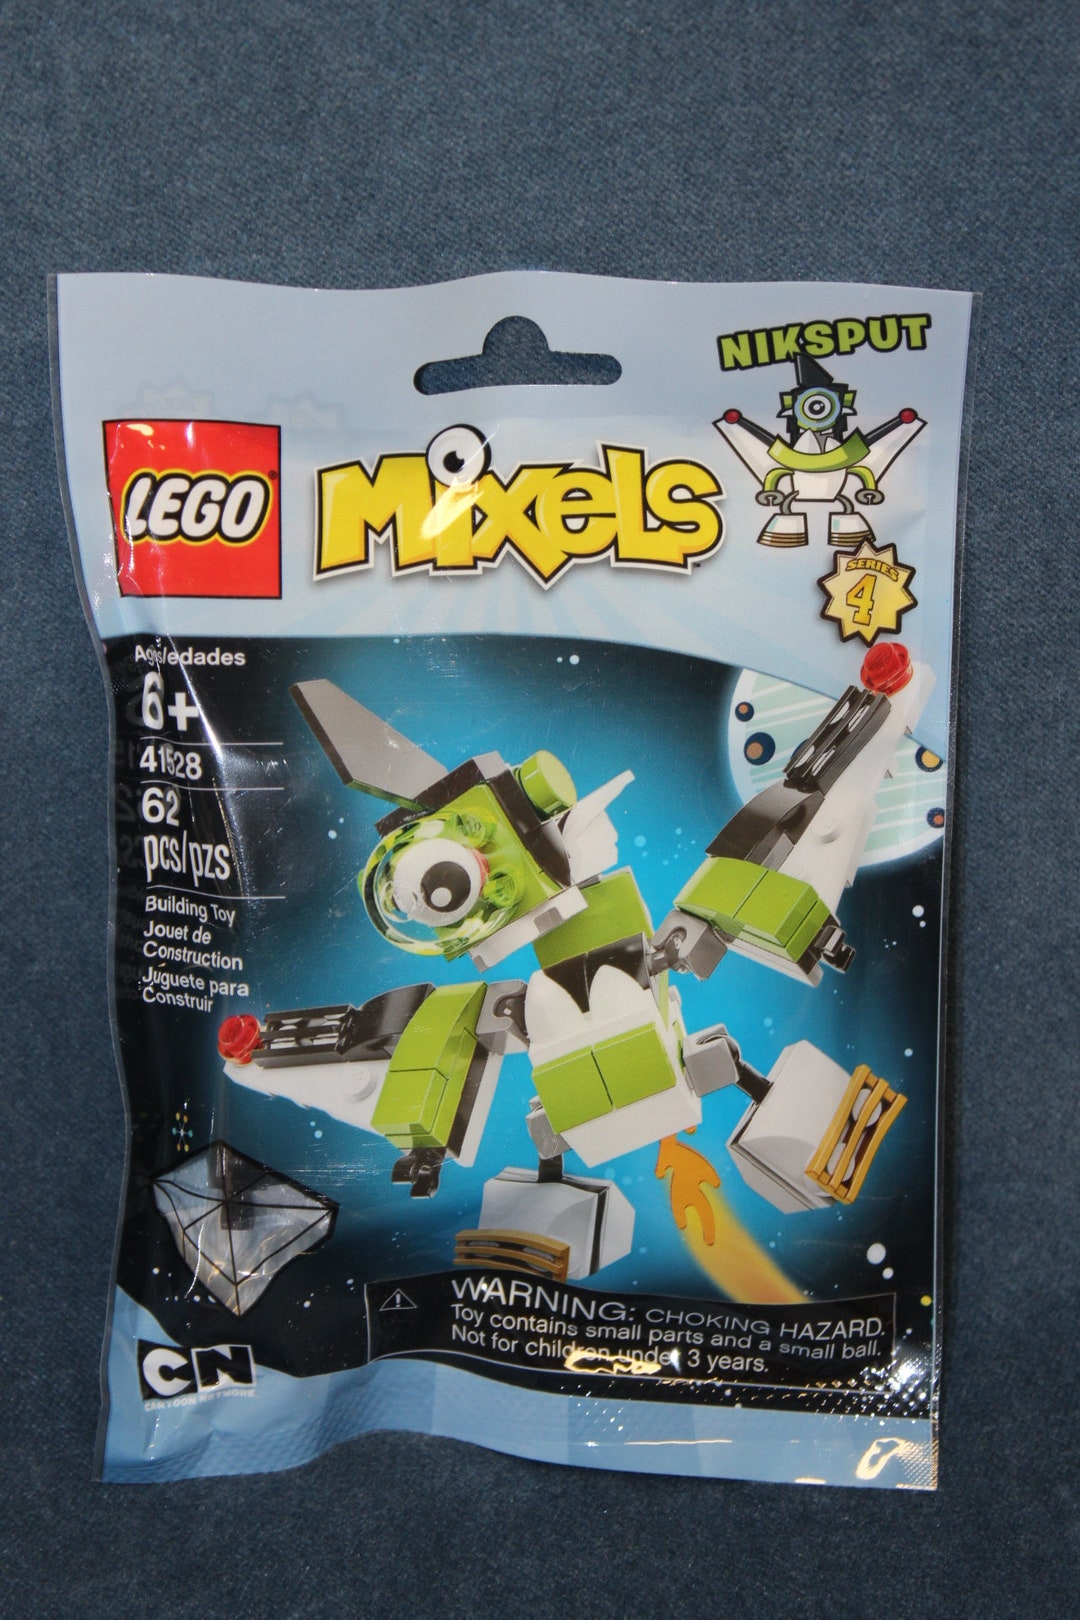 LEGO Mixels Building Kits - Etsy Canada